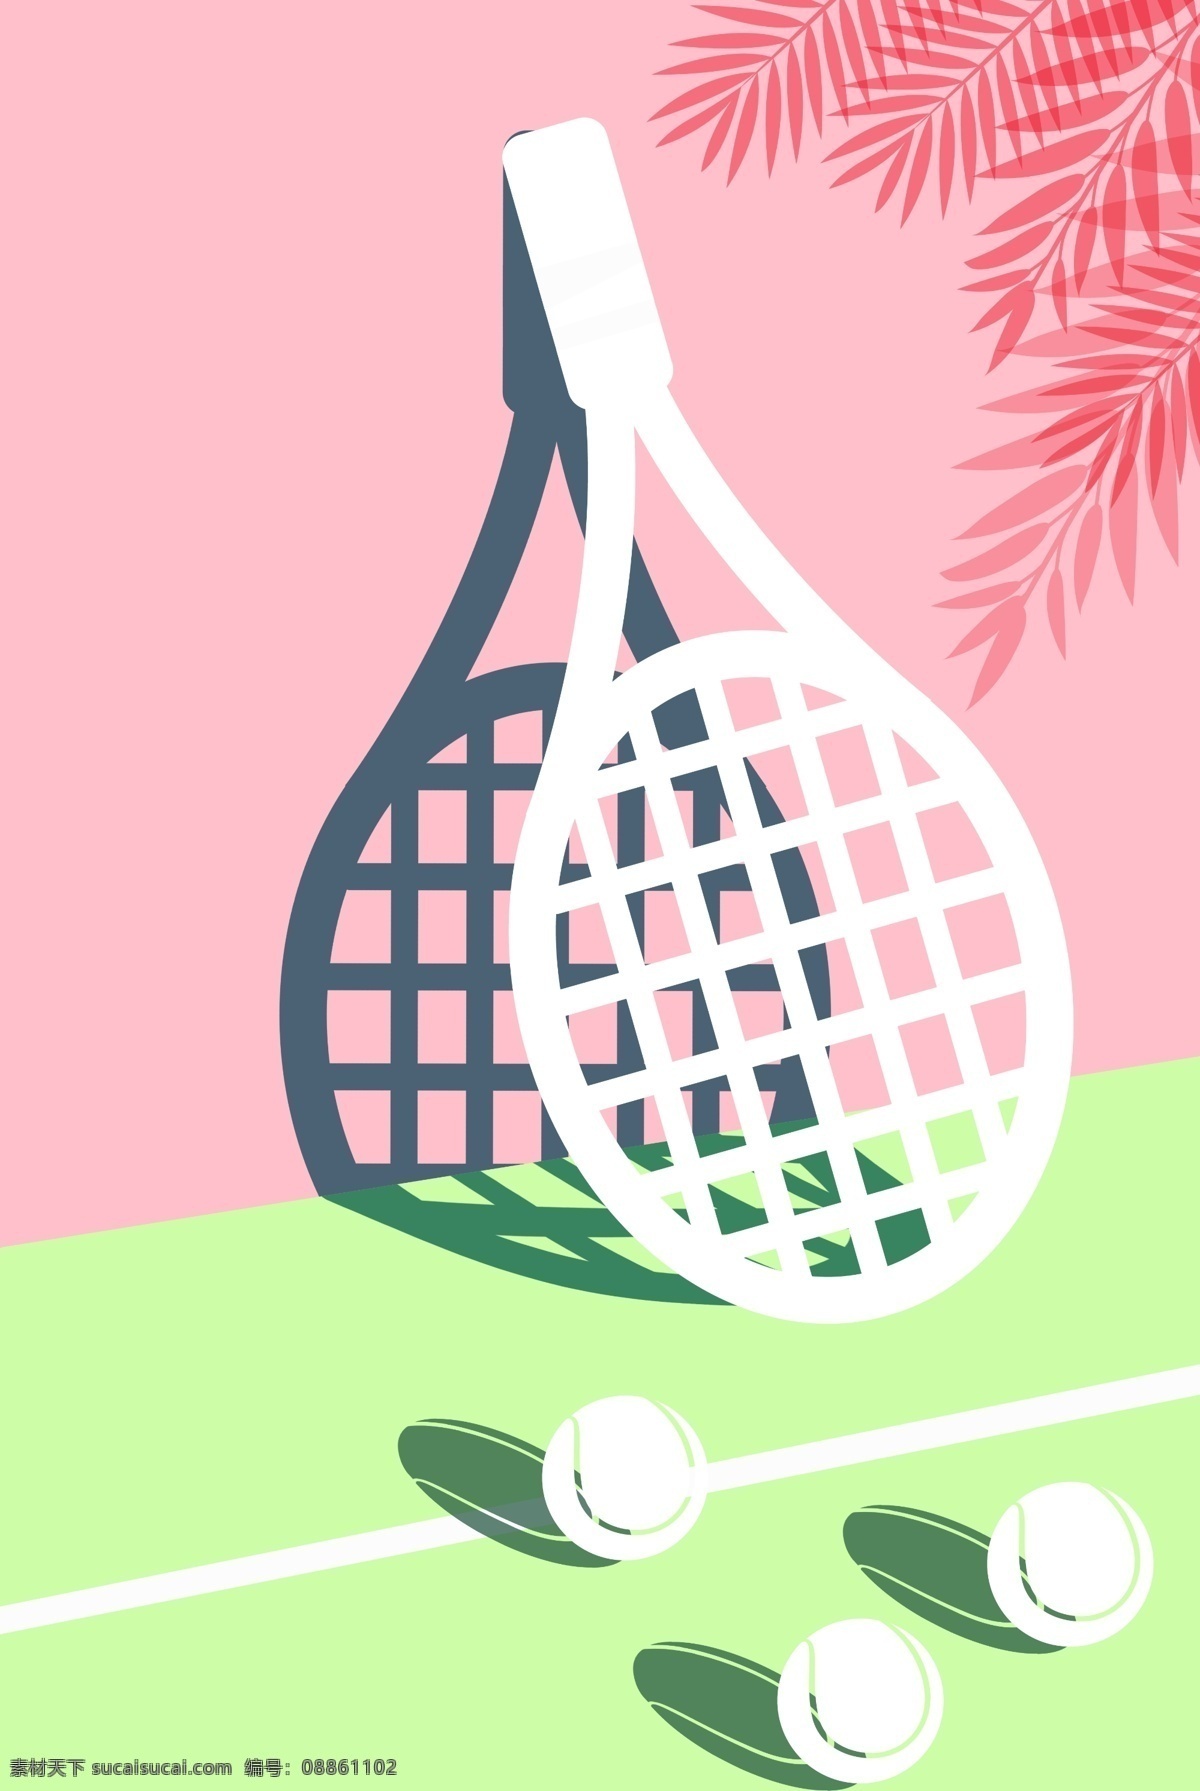 简约 风格 运动会 网球场地 海报 背景 场地 网球 球拍 叶子 小清新 体育 竞技 比赛 健身 宣传 矢量